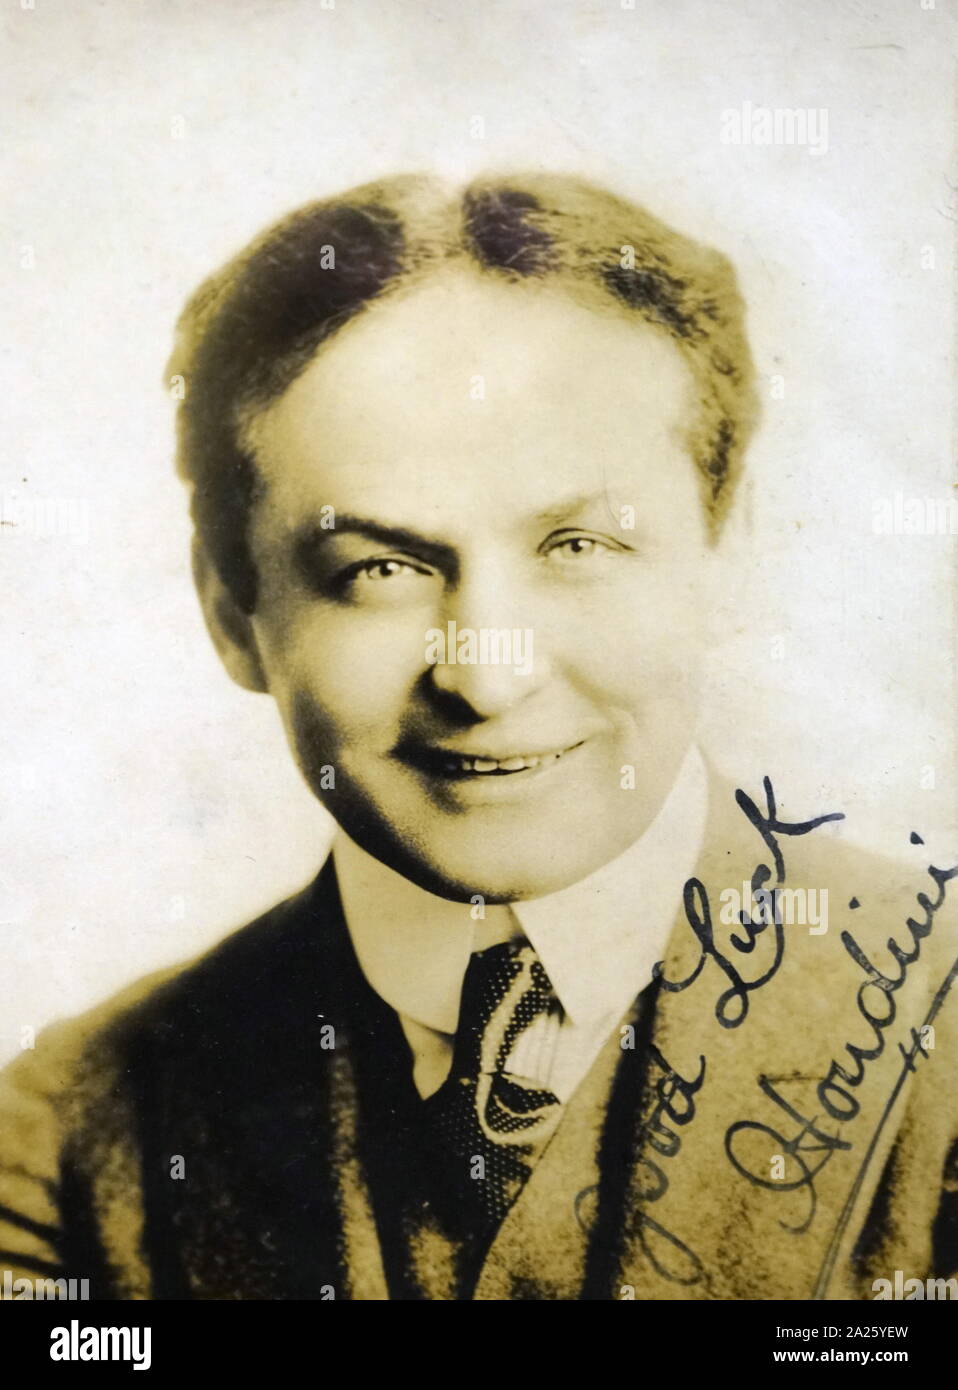 Une photo autographiée de Harry Houdini. Harry Houdini (1874-1926) Né en Hongrie et illusionniste américain stunt performer. Banque D'Images